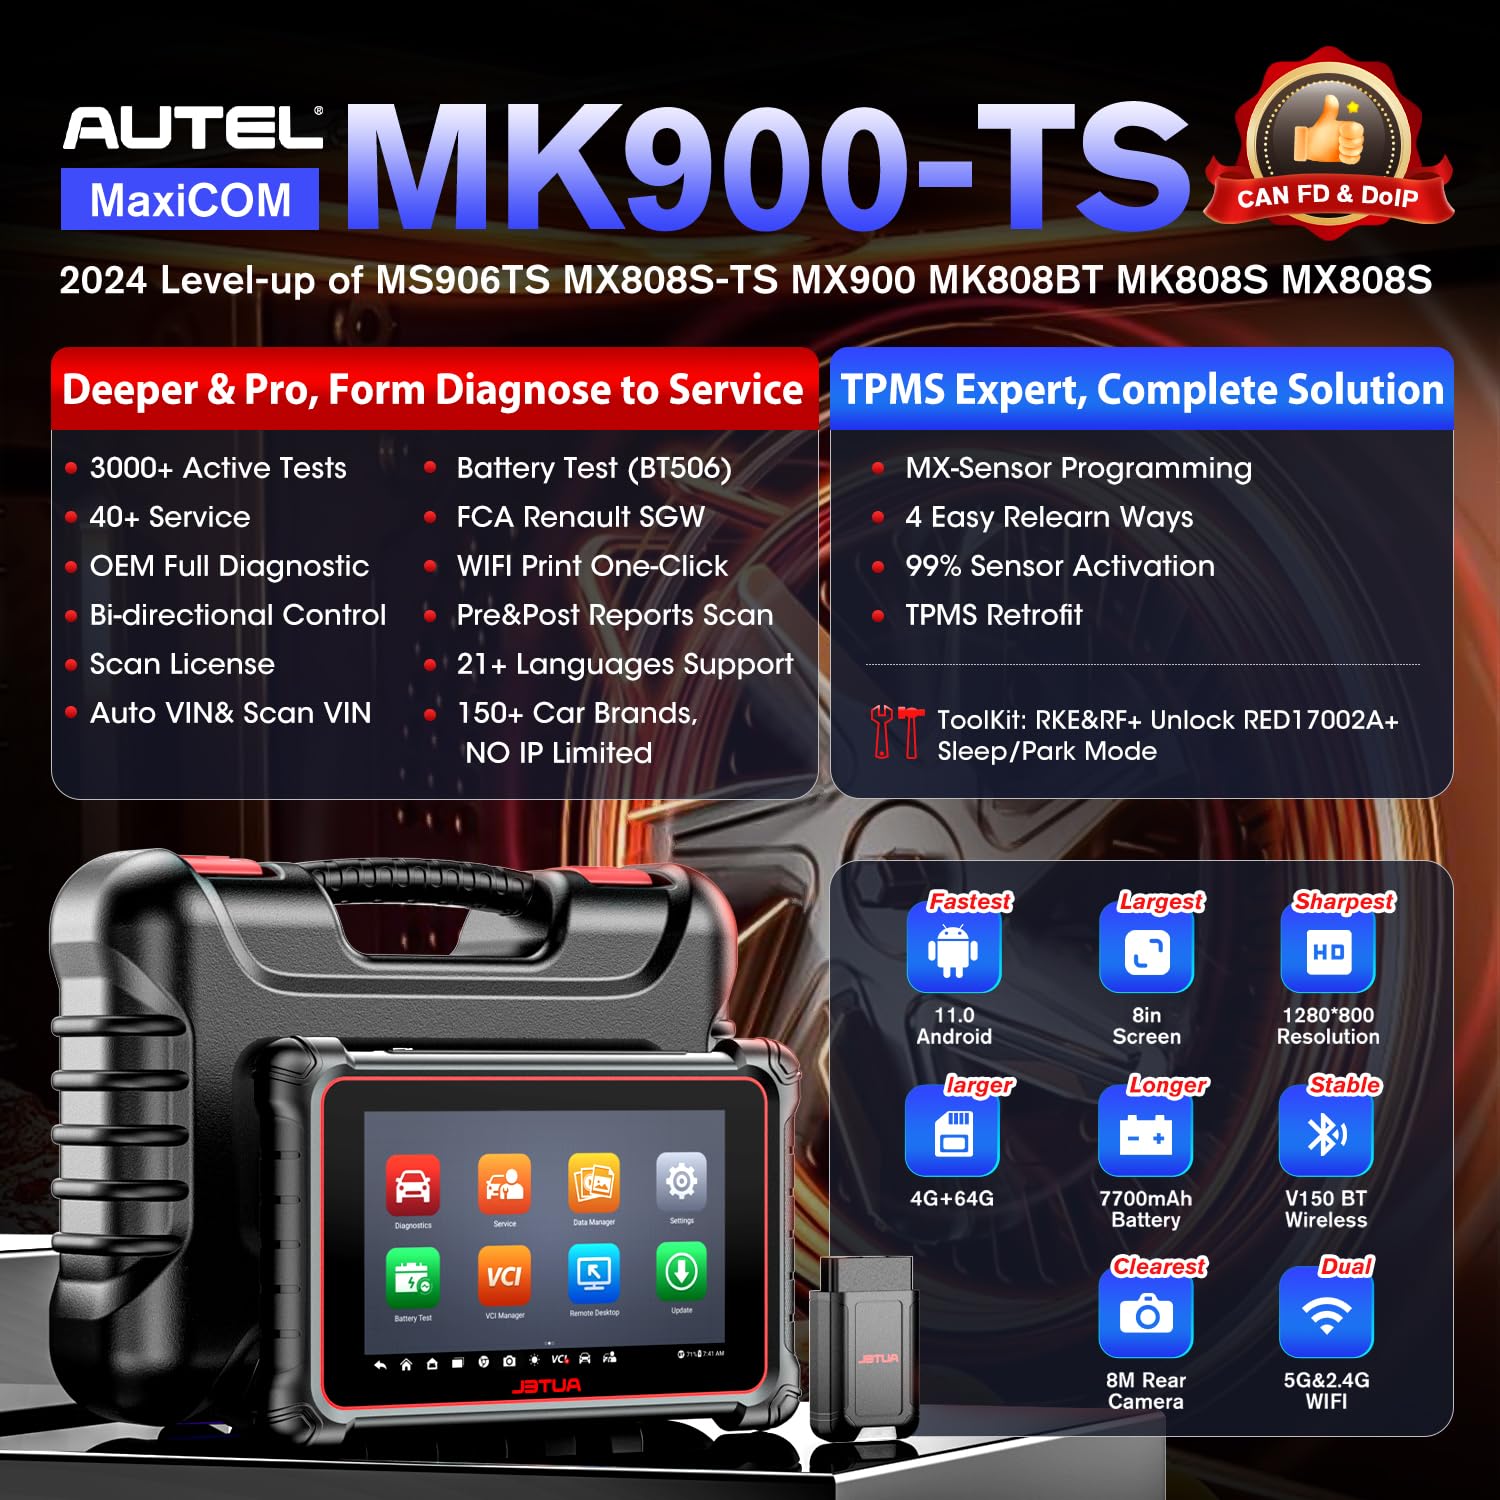 autel mk900ts features